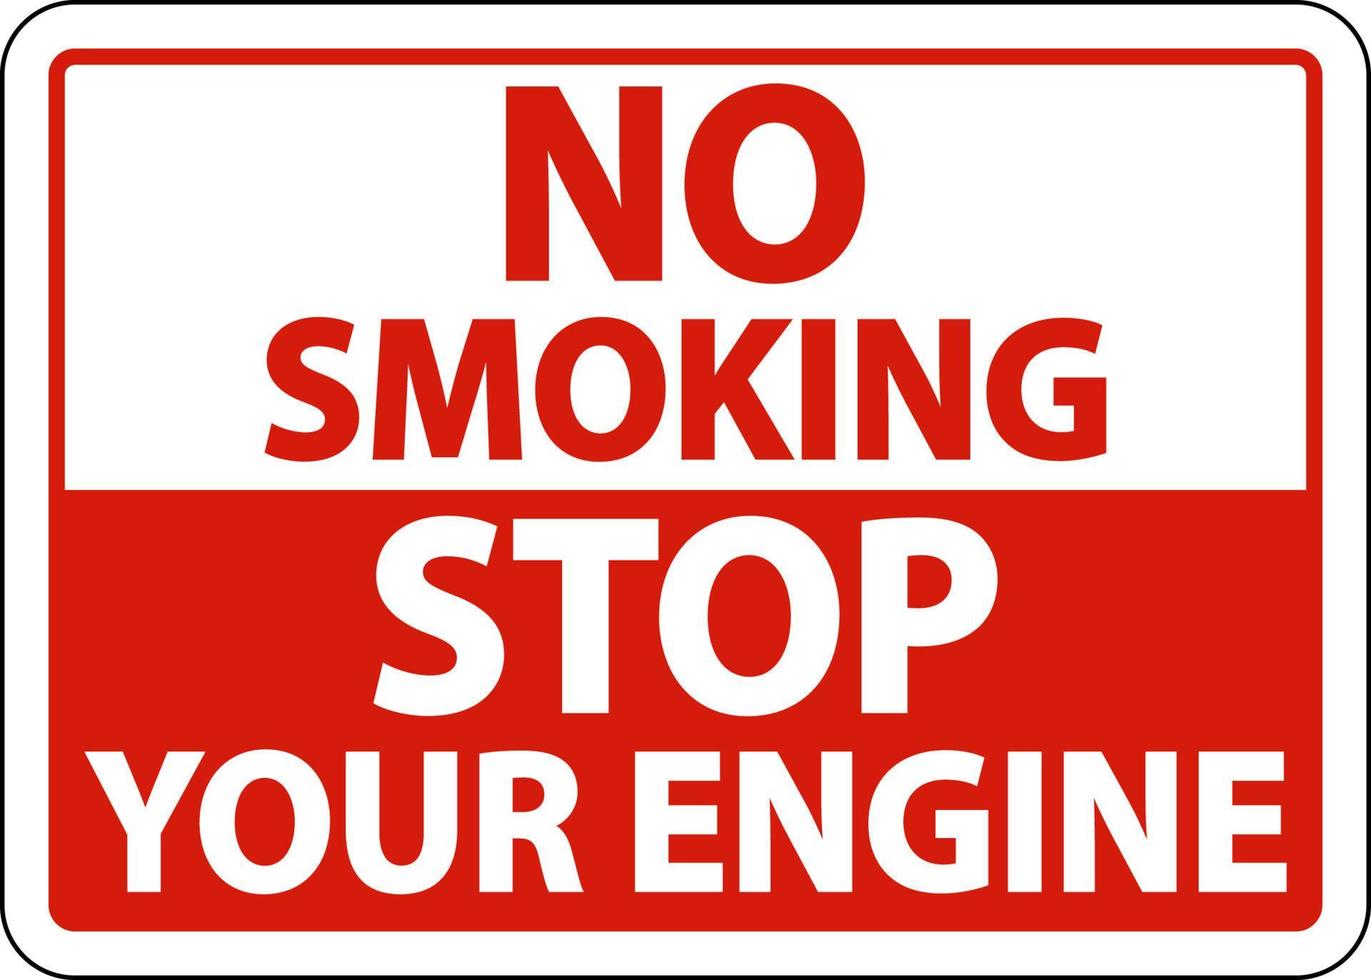 niet roken stop uw motor teken op witte achtergrond vector